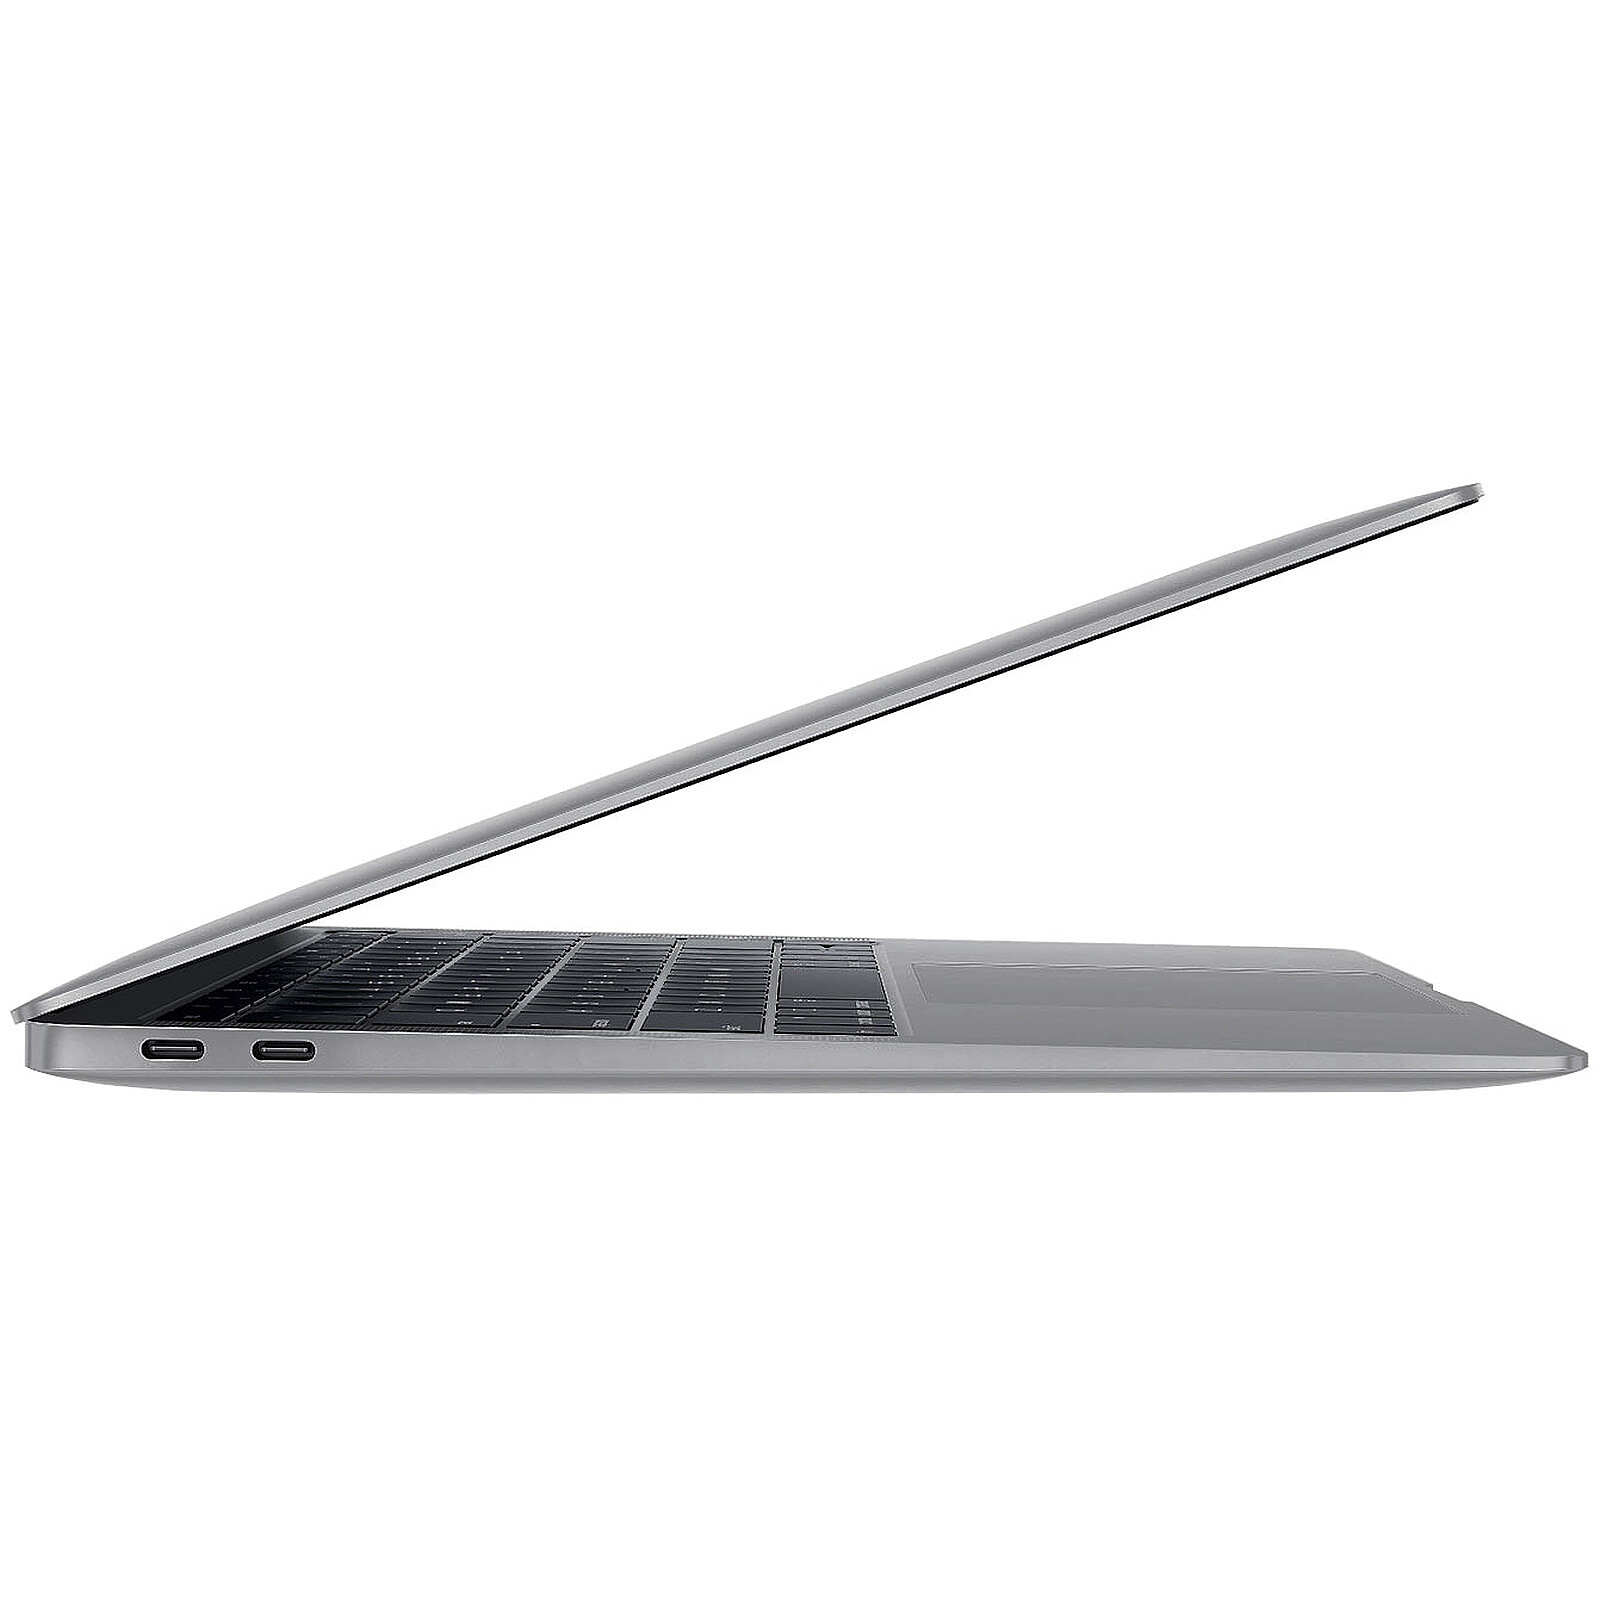 MacBook Air 13 2017 Core i5 bicoeur 1,8 GHz 8 Go SSD 512 Go - MacBook Air  - Apple